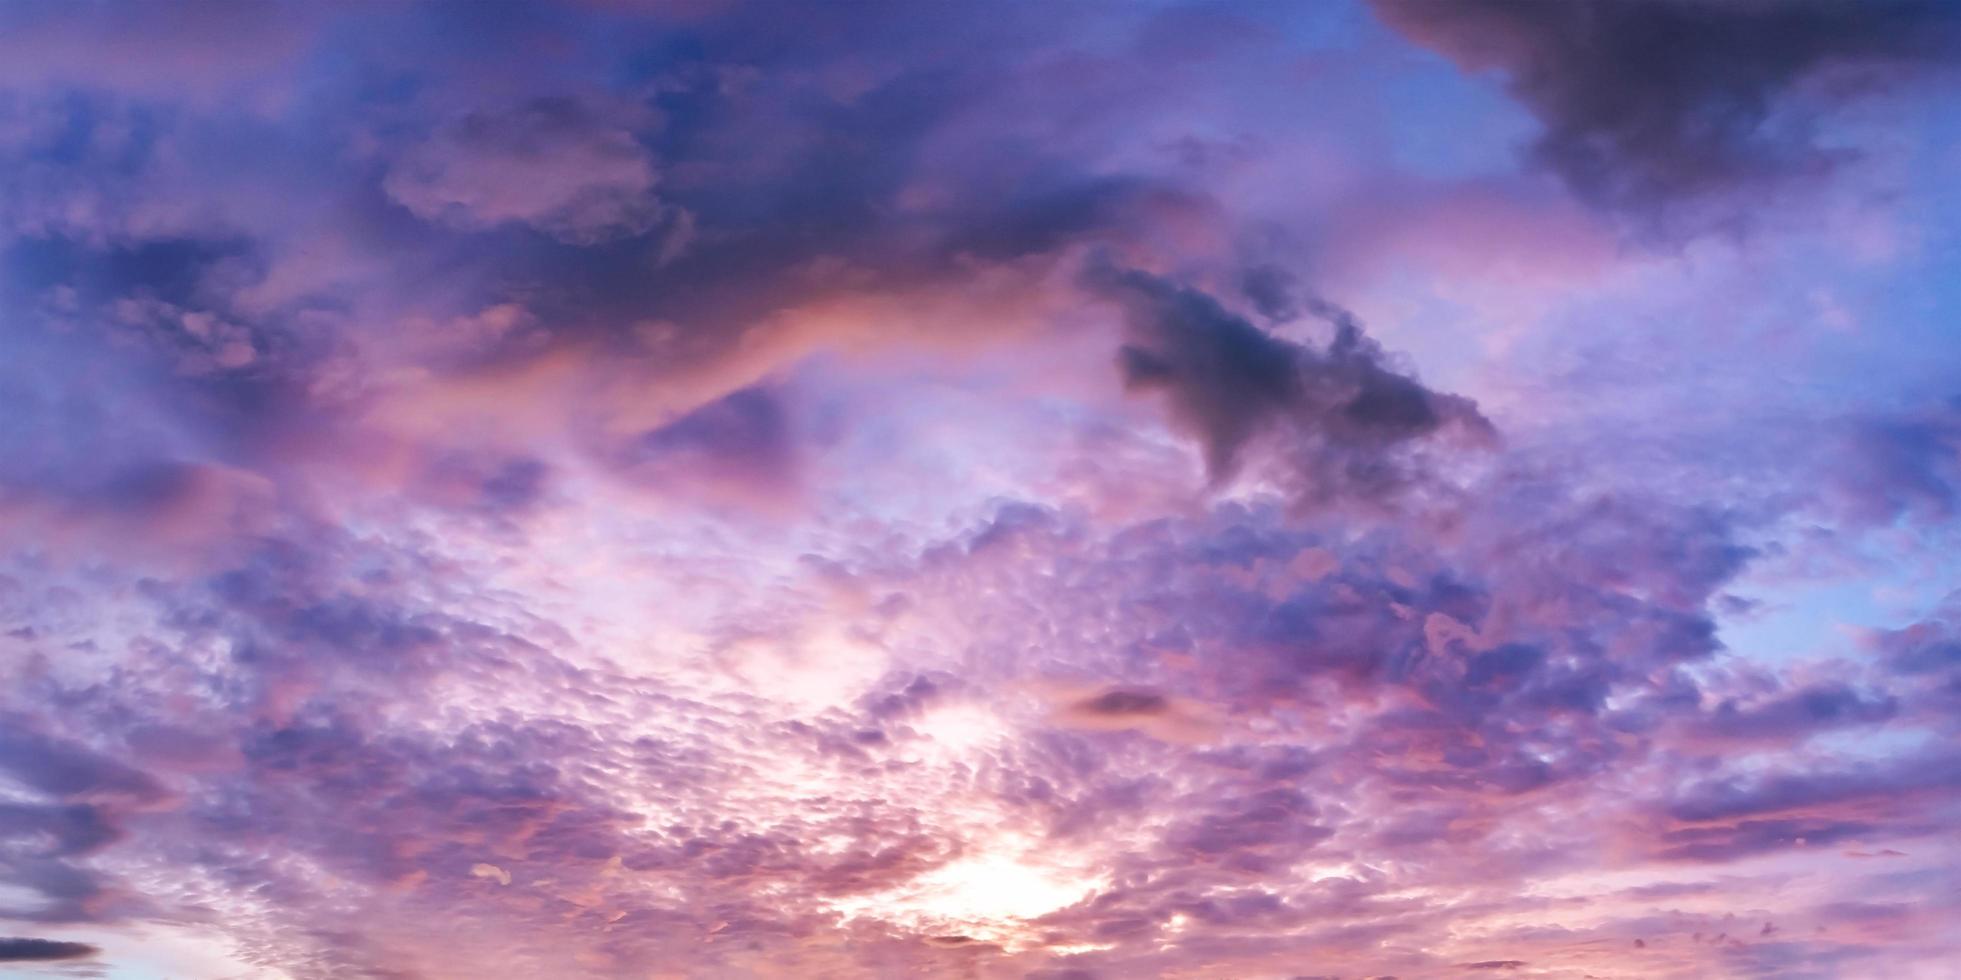 ciel panoramique spectaculaire avec des nuages au lever et au coucher du soleil. photo